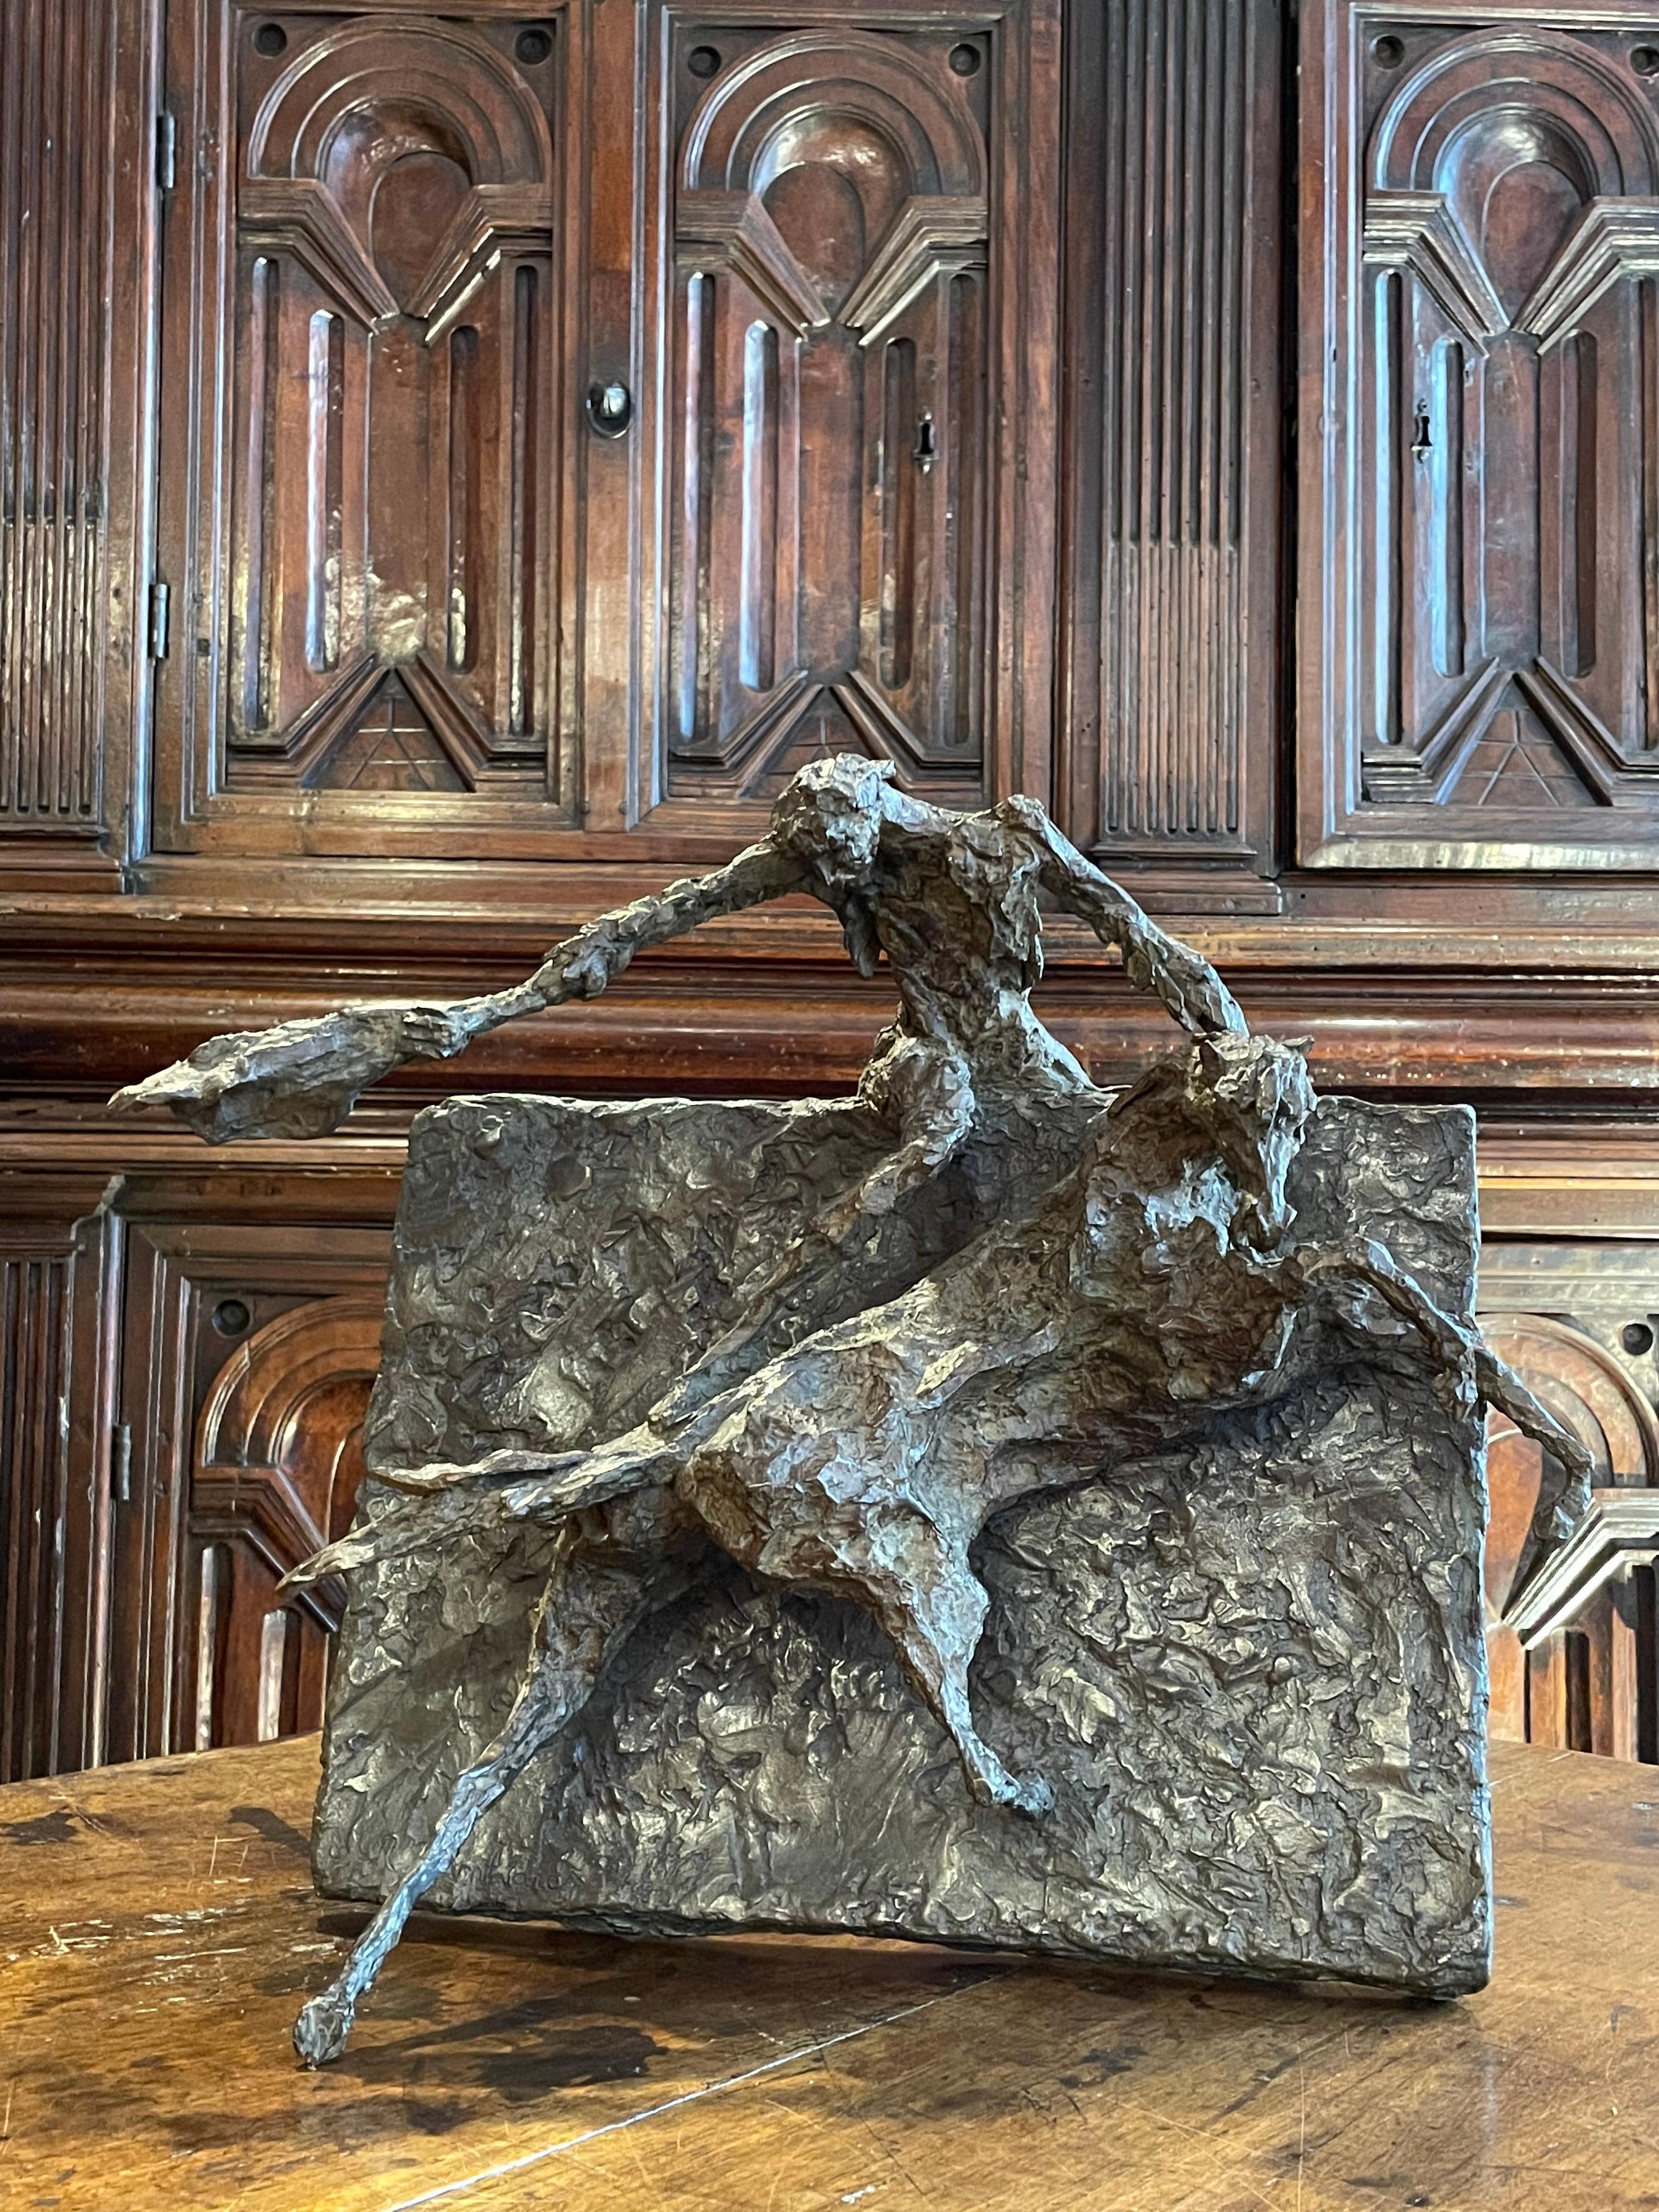 Magdalena Reinharez (1925 - 2012)
Hommage à Géricault

1992
Sculpture en bronze à patine brune
Signé 